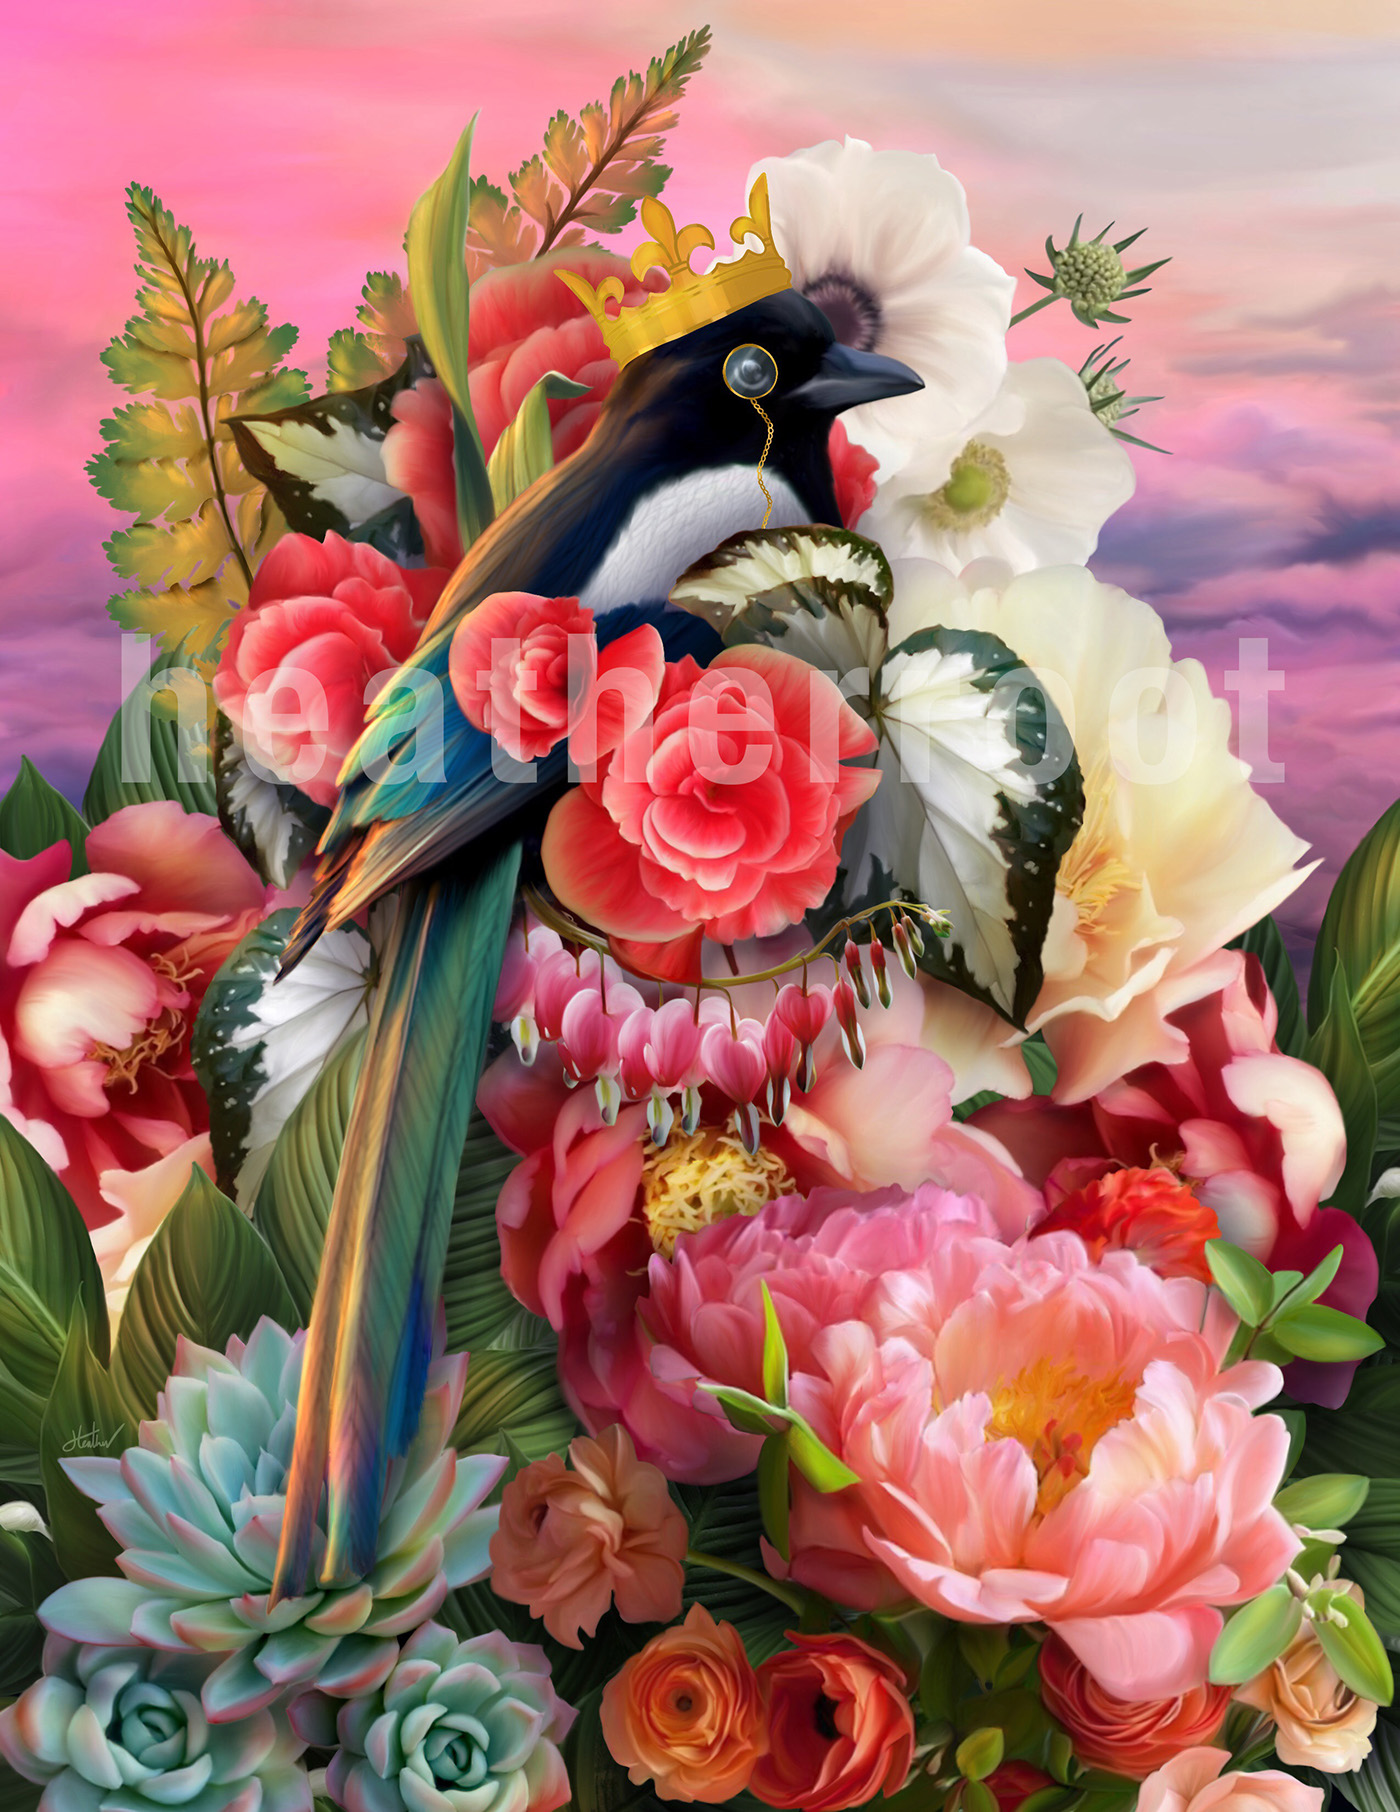 bird painting   Flowers garden art artwork digital digitalart digitalpainting fantasyart